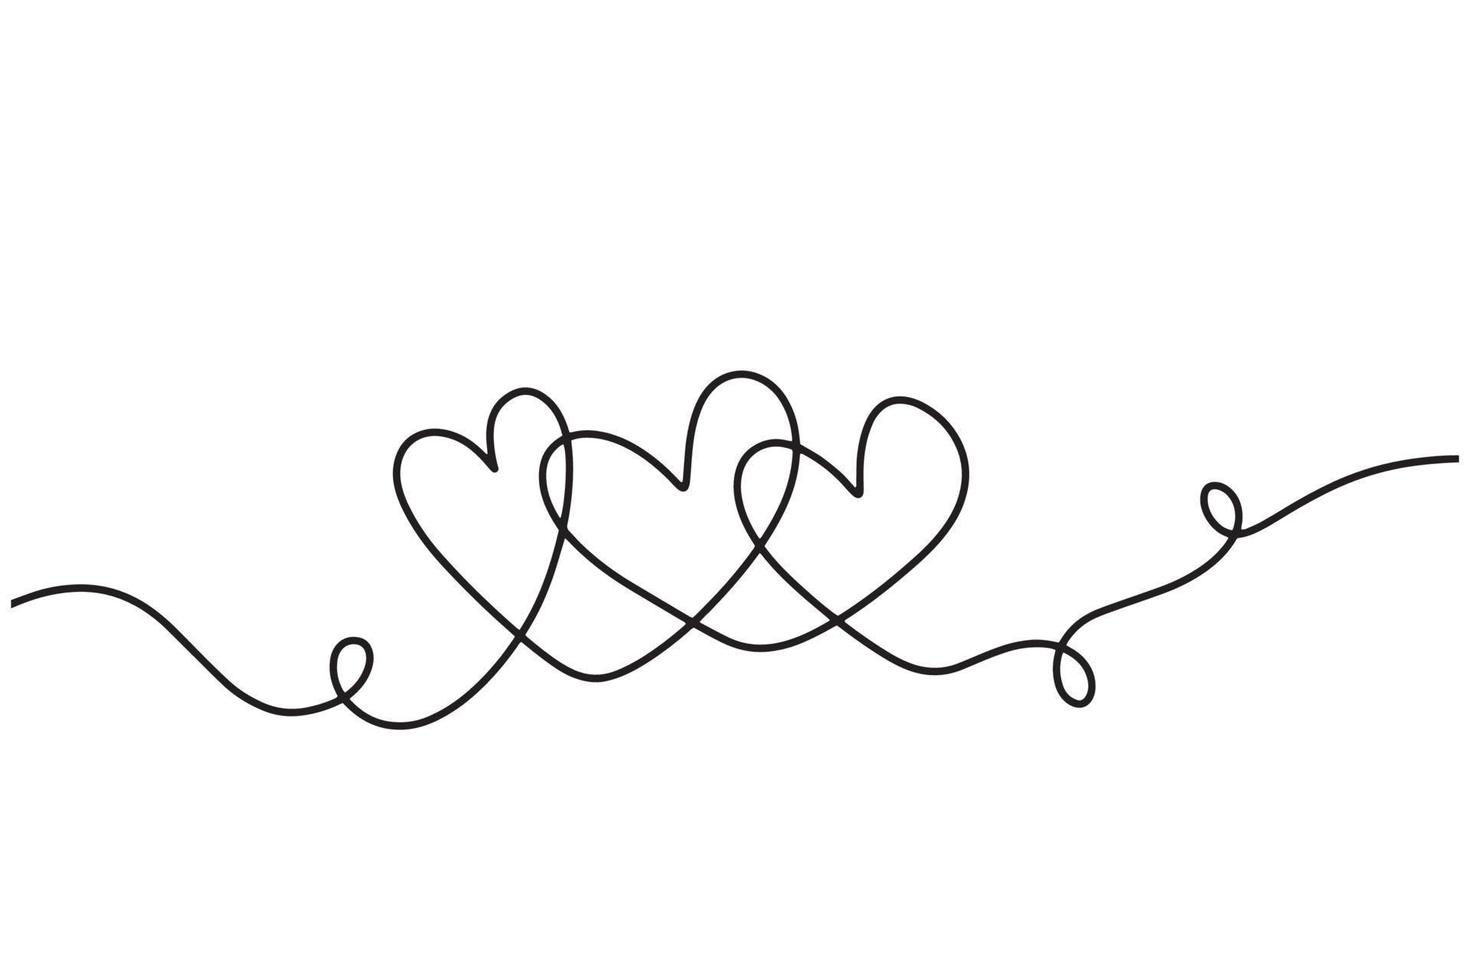 dibujo de arte de línea continua del grupo familiar de corazones. una metáfora de la idea del amor familiar. símbolo abstracto de la familia feliz para un diseño minimalista moderno y contemporáneo vector